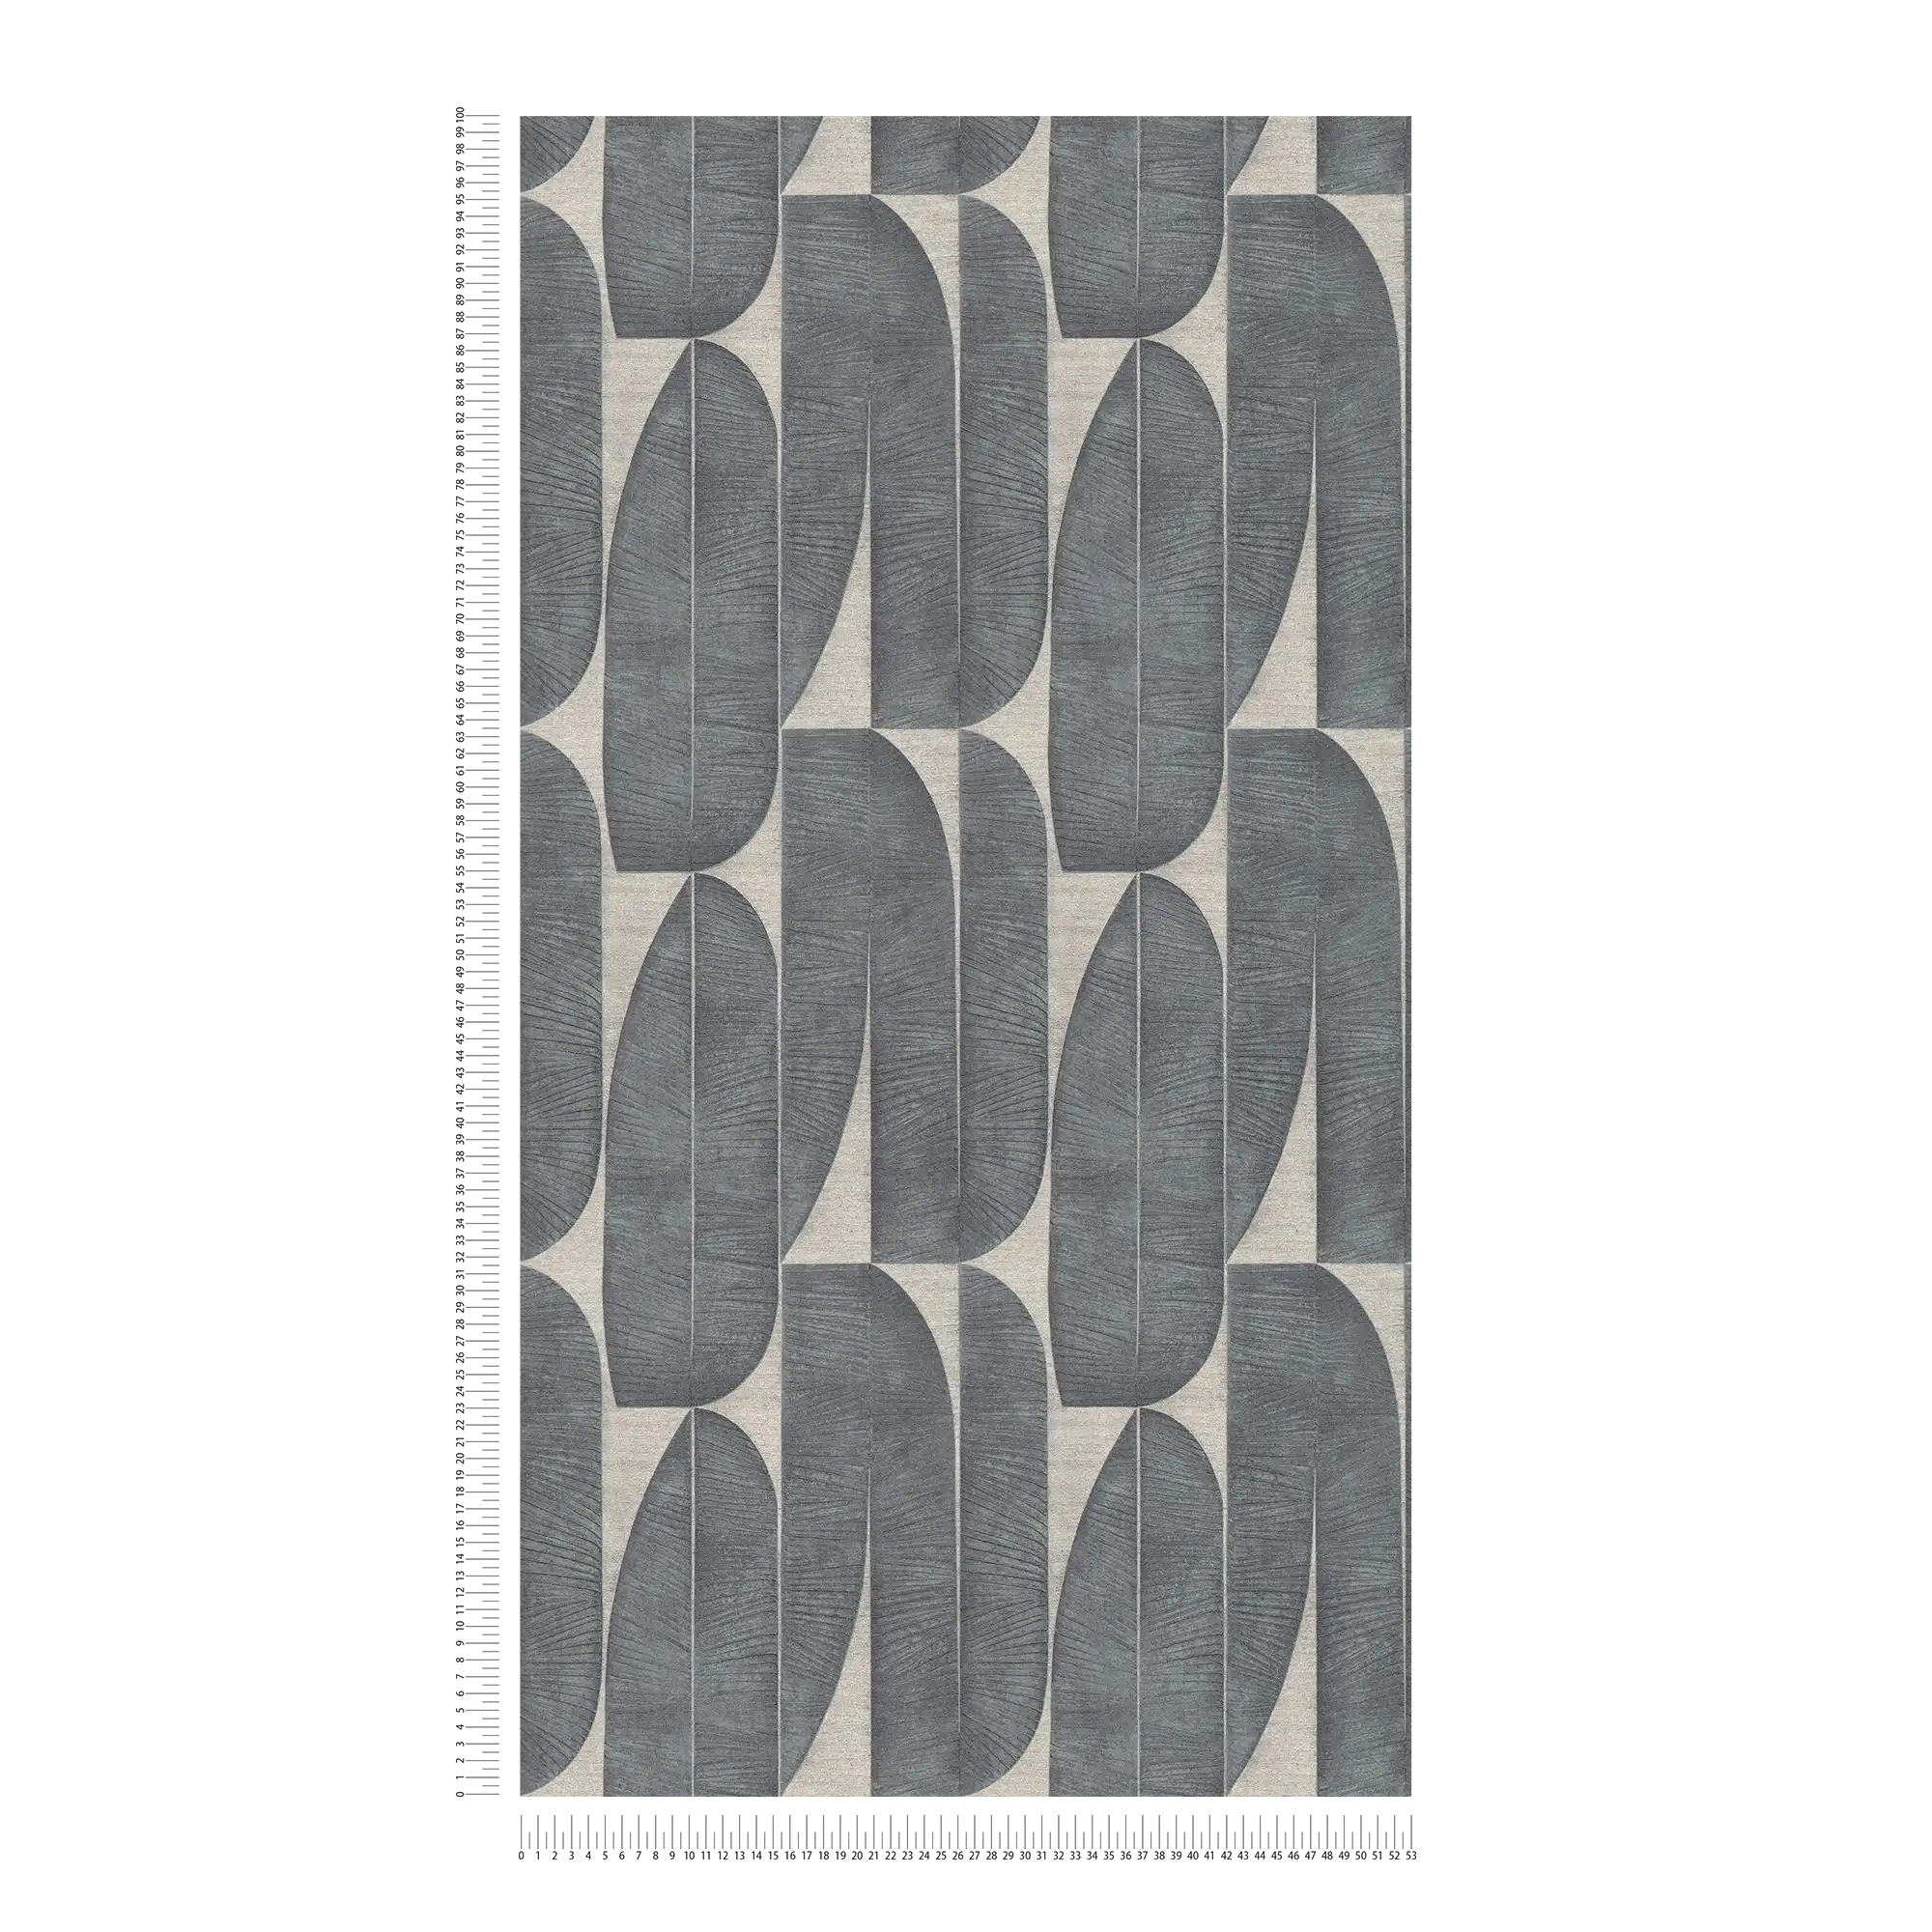             Vliesbehang met geometrisch patroon in bladlook - beige, zwart
        